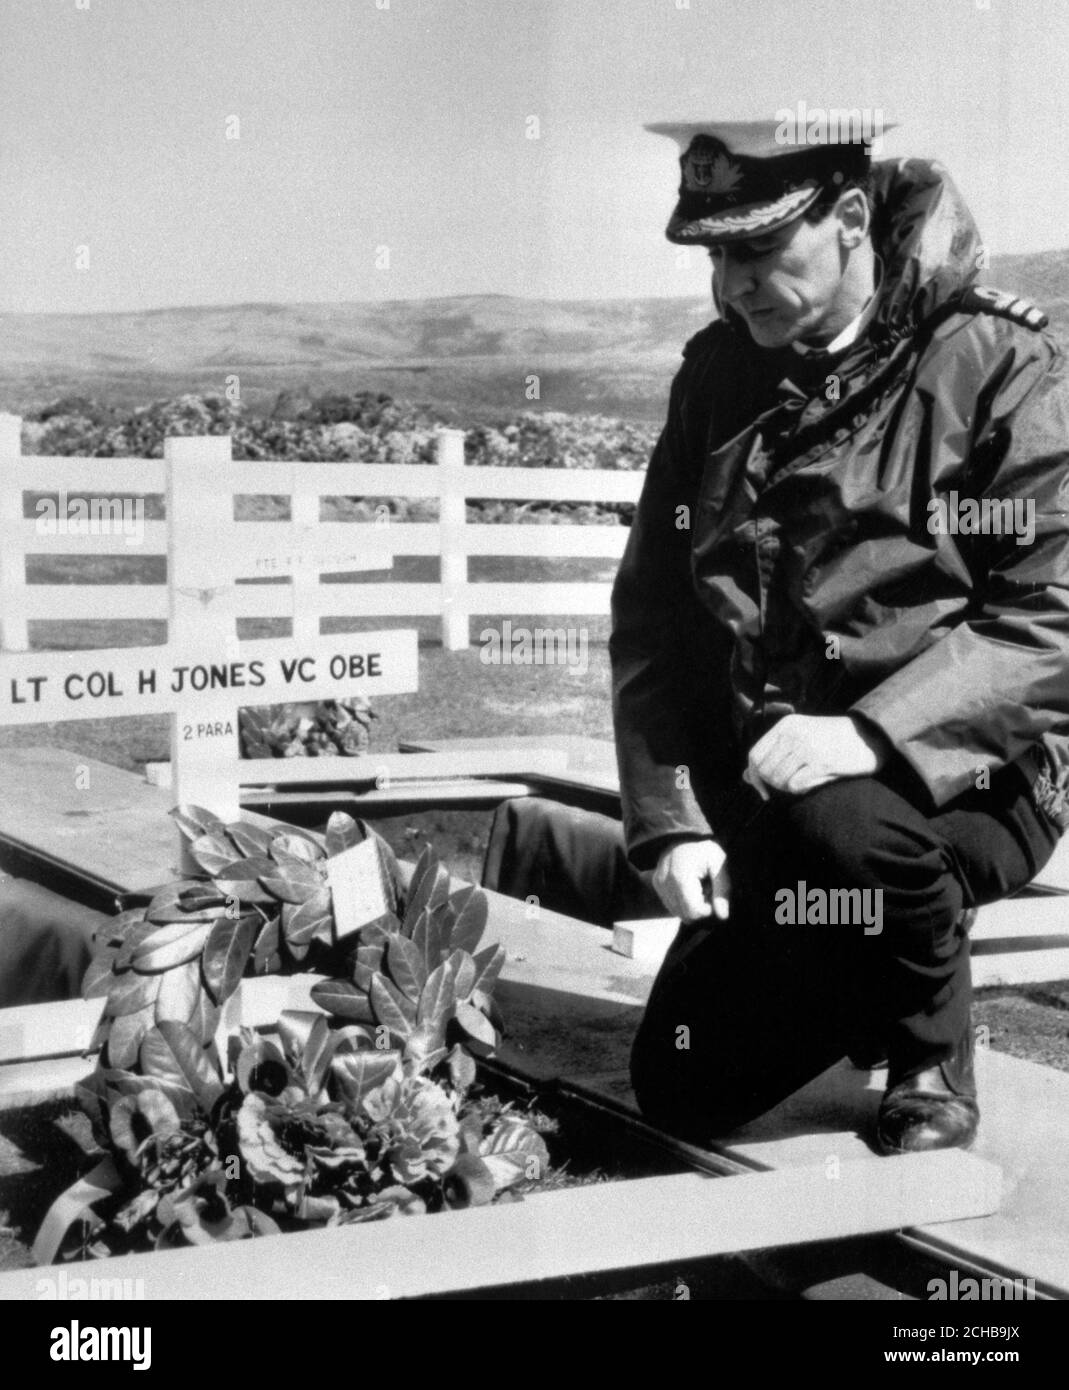 Un quadro del Ministero della Difesa pubblicato a Londra, che mostra il CDR Tim Jones, RN, inginocchiato al graveside di suo fratello Lt col 'H' Jones VC, che era tra i 14 uomini uccisi nei combattimenti delle Falklands. Sarà sepolto al Blue Beach Military Cemetery di Port San Carlos. Foto Stock